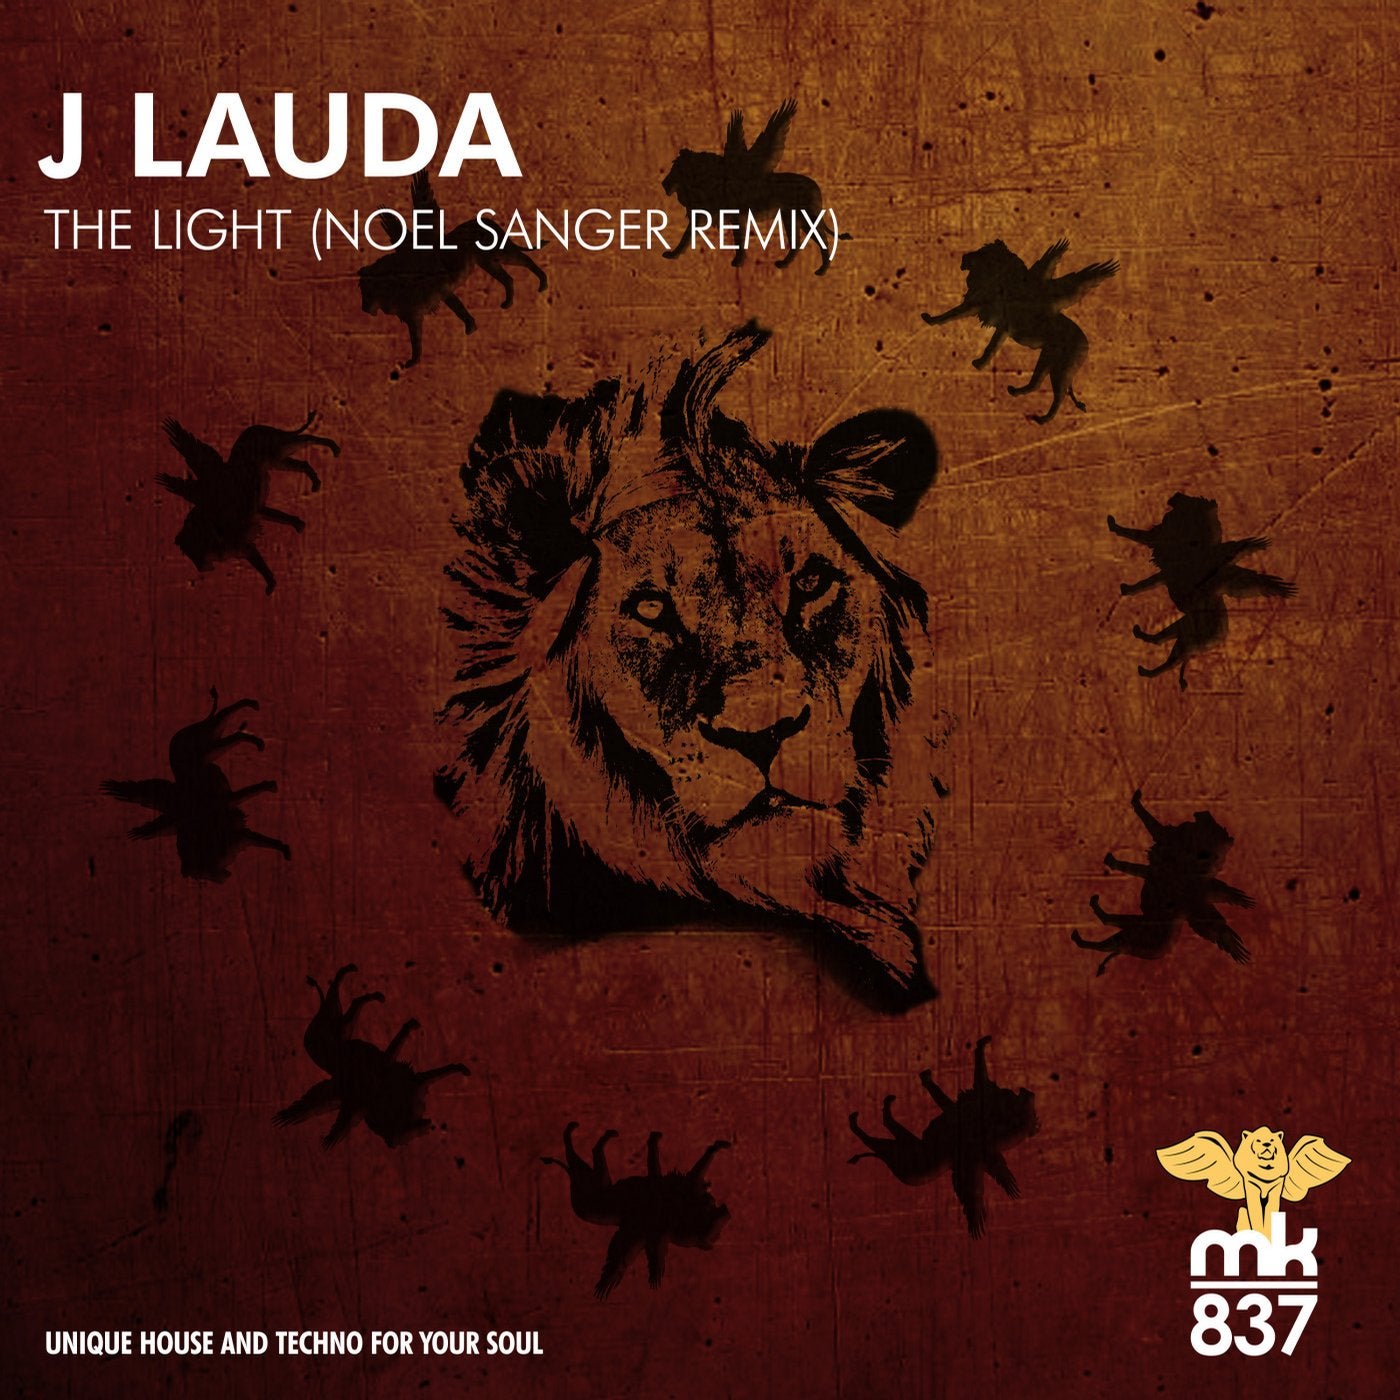 The Light (Noel Sanger Remix)